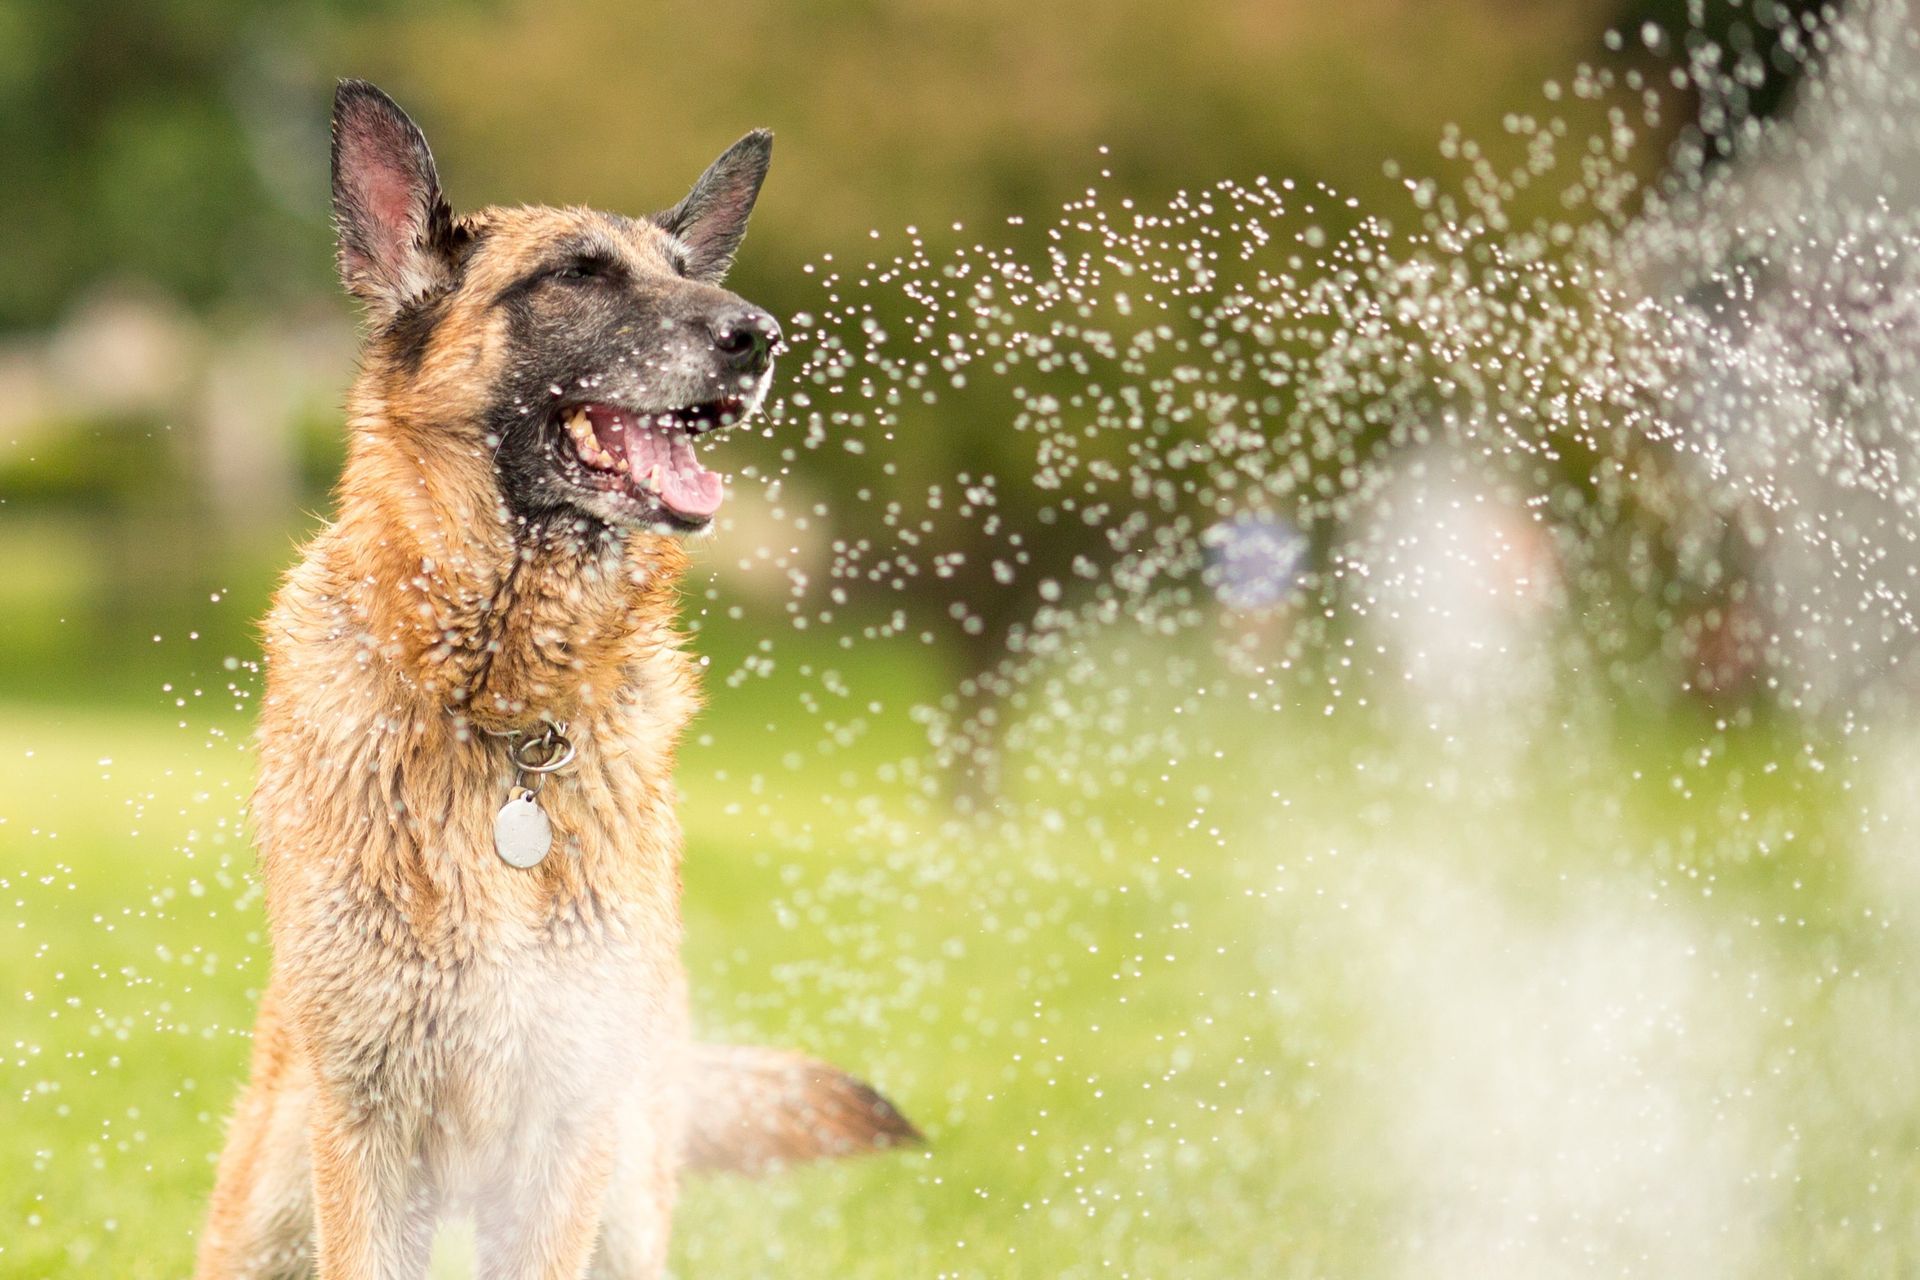 Family dog enjoying home sprinkler system.